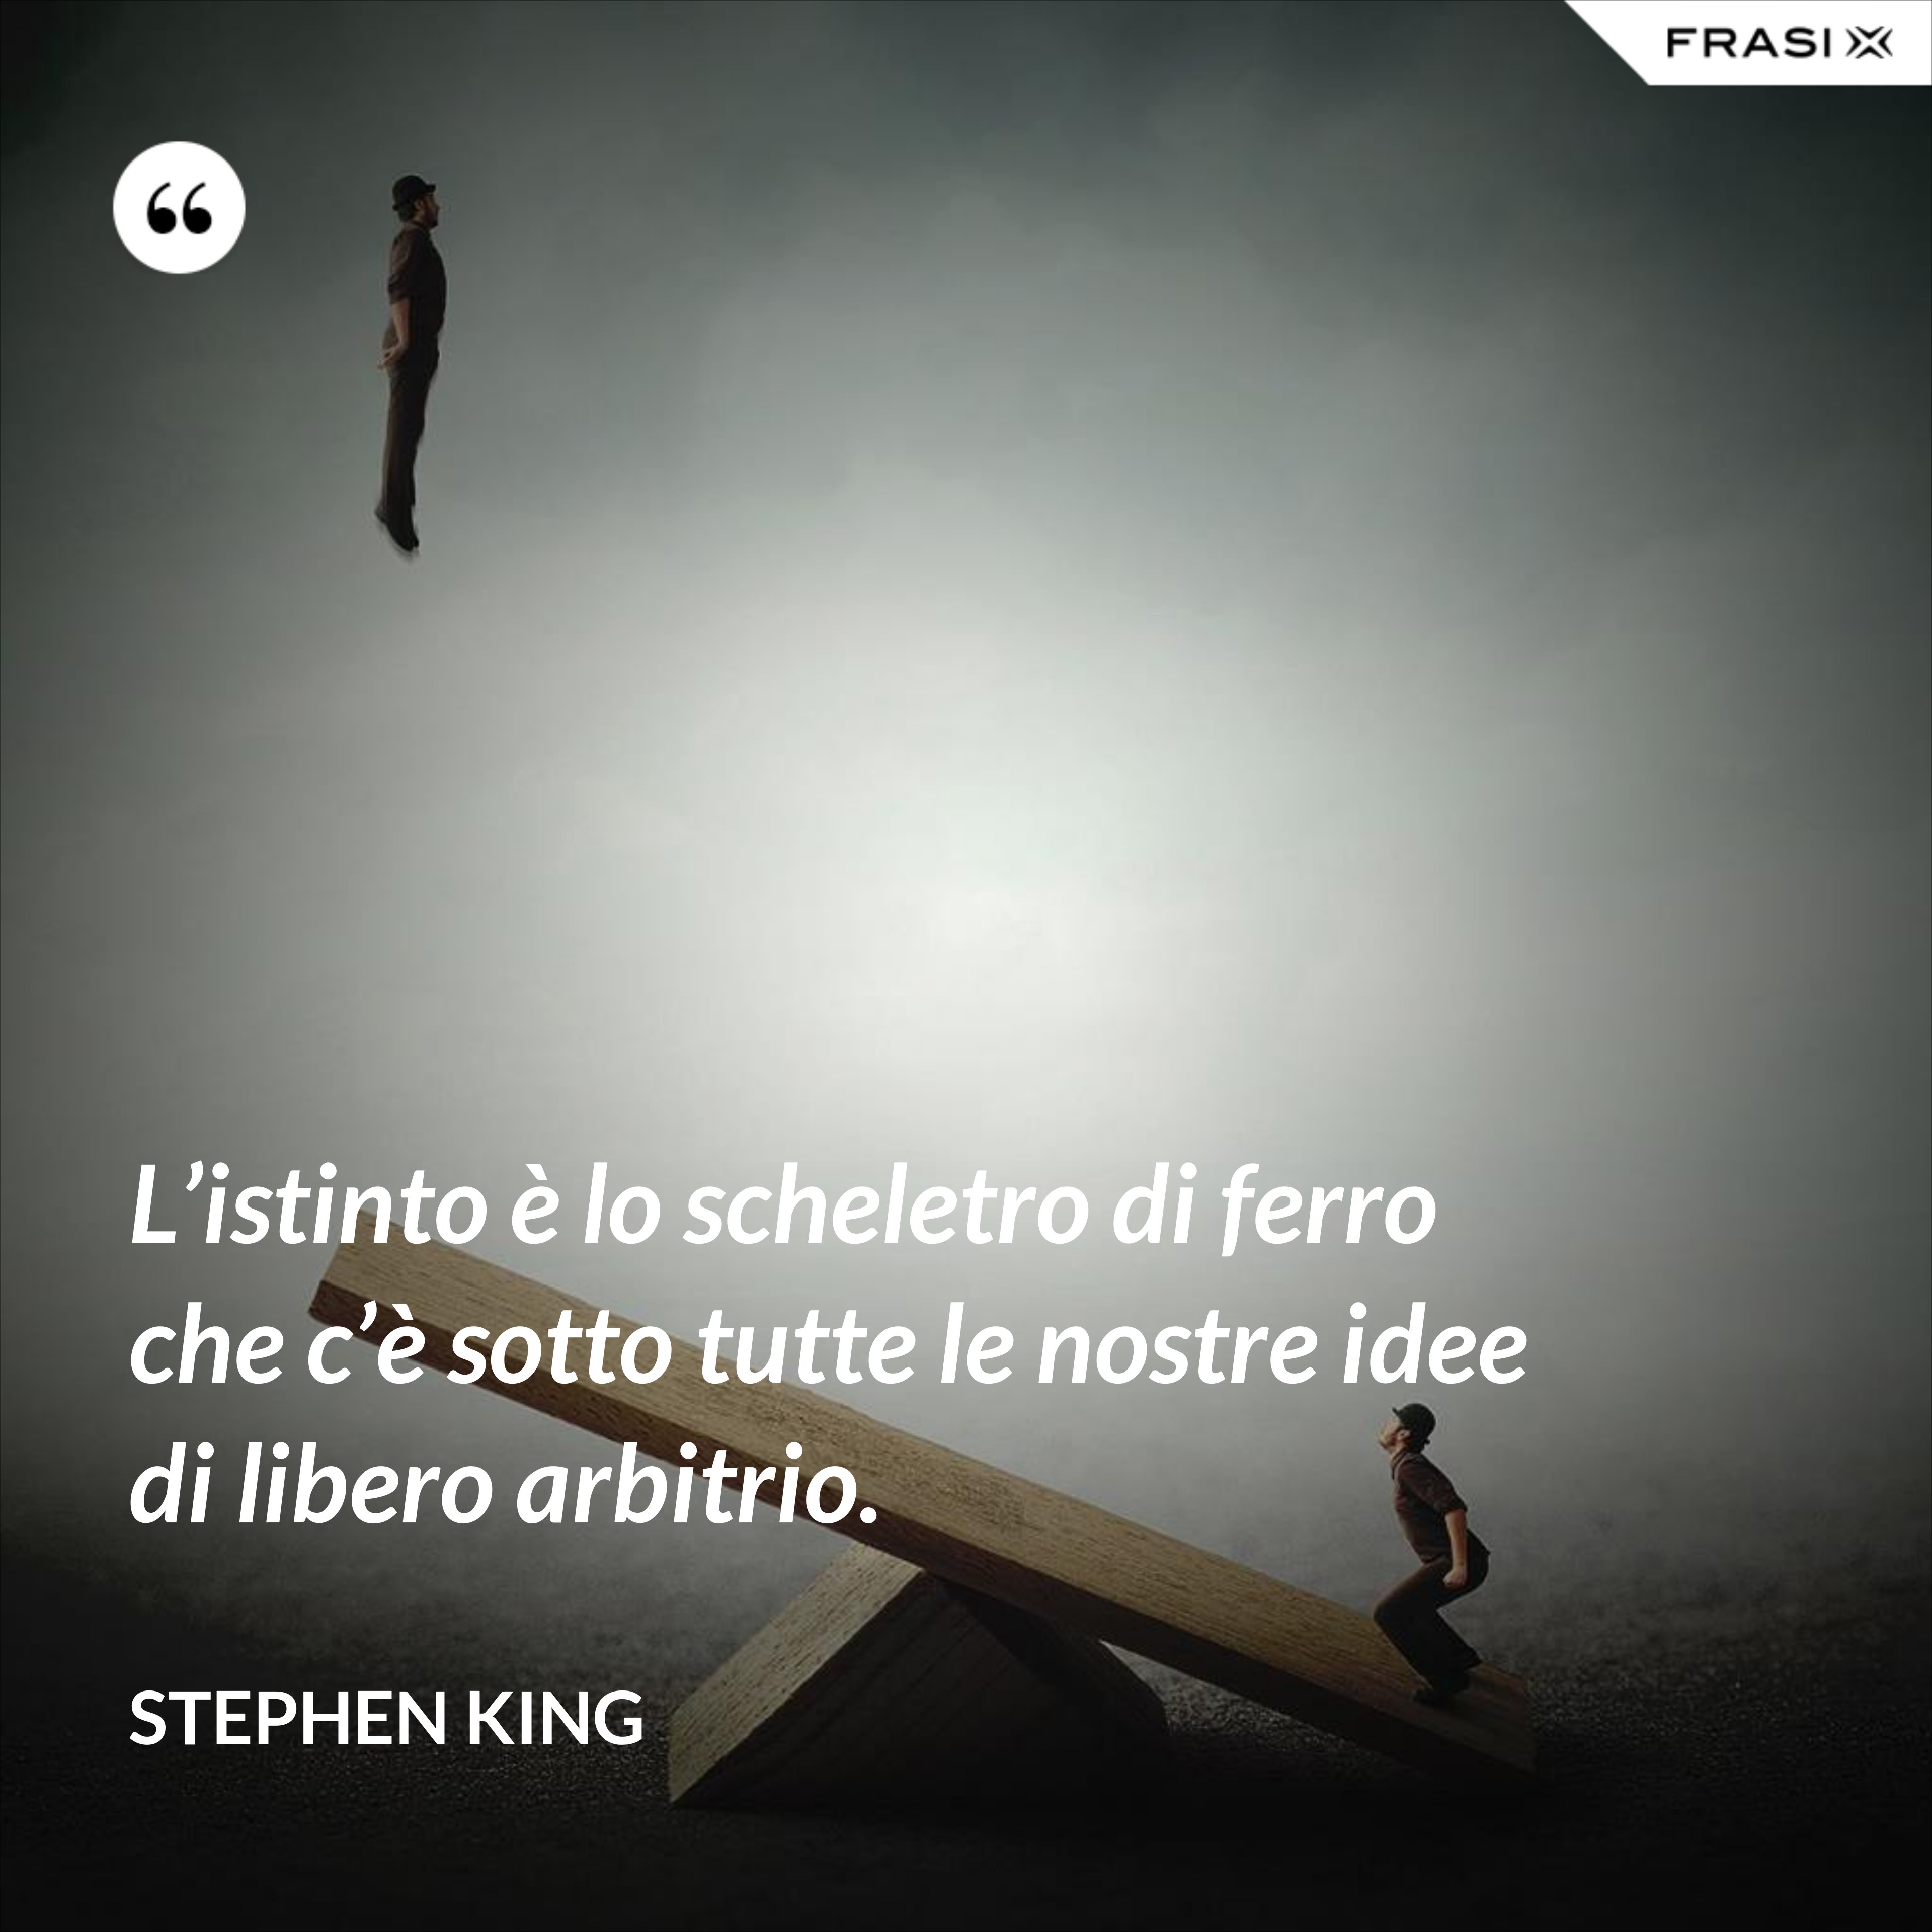 L’istinto è lo scheletro di ferro che c’è sotto tutte le nostre idee di libero arbitrio. - Stephen King